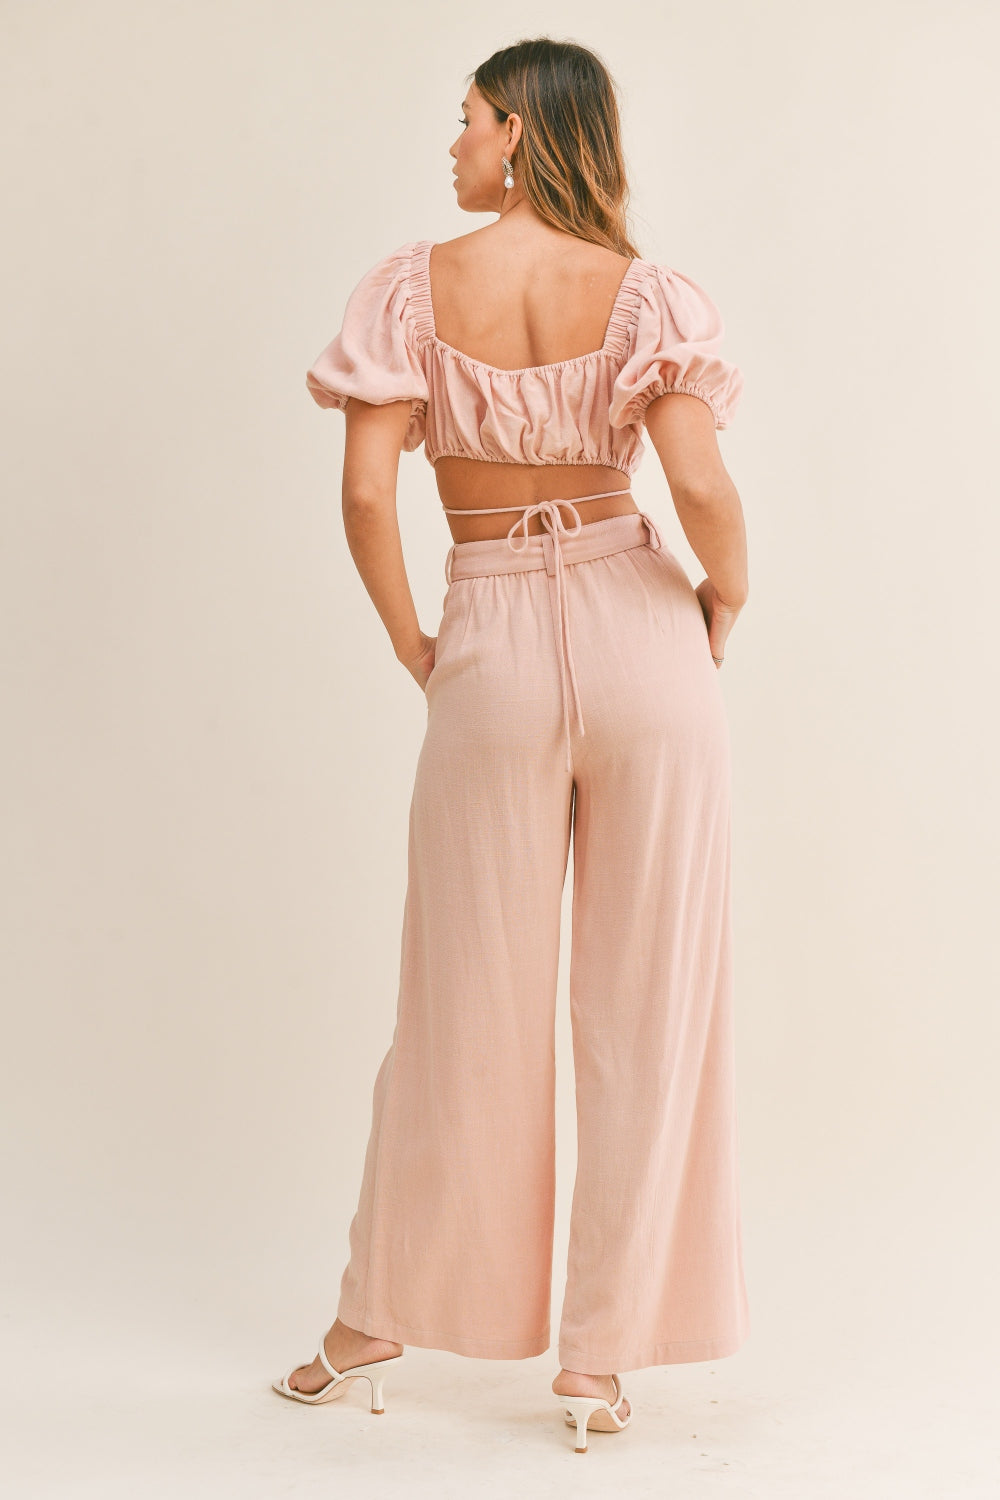 TEEK - Dusty Pink Cut Out Drawstring Crop Top Belted Pants Set SET TEEK Trend   